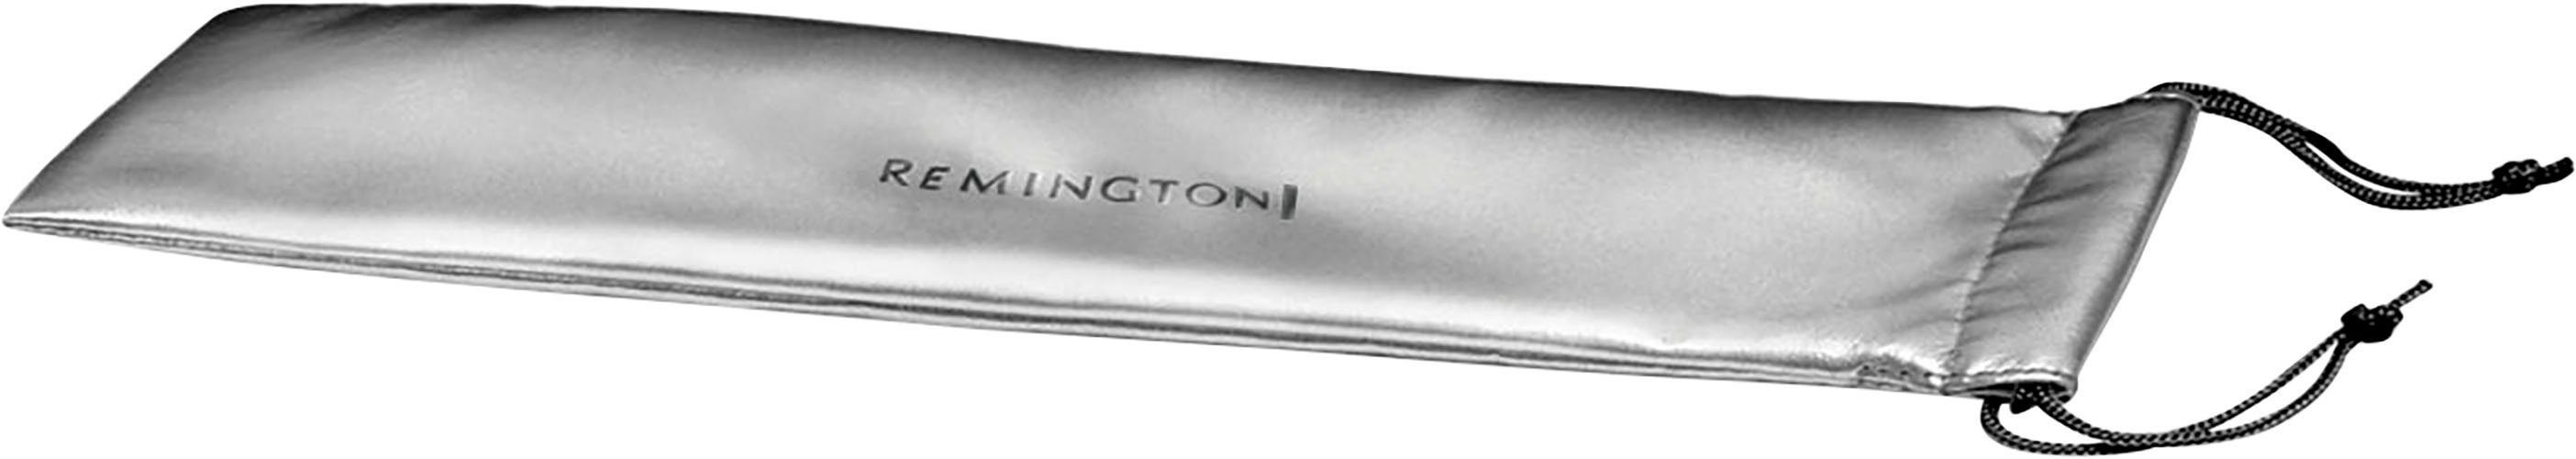 Remington Lockenstab Pearl Pro Curl (CI9532), Keramik-Beschichtung, 32 mm  für große Locken, Keramikbeschichtung mit echten Perlen, 32 mm Lockenstab  für große Locken